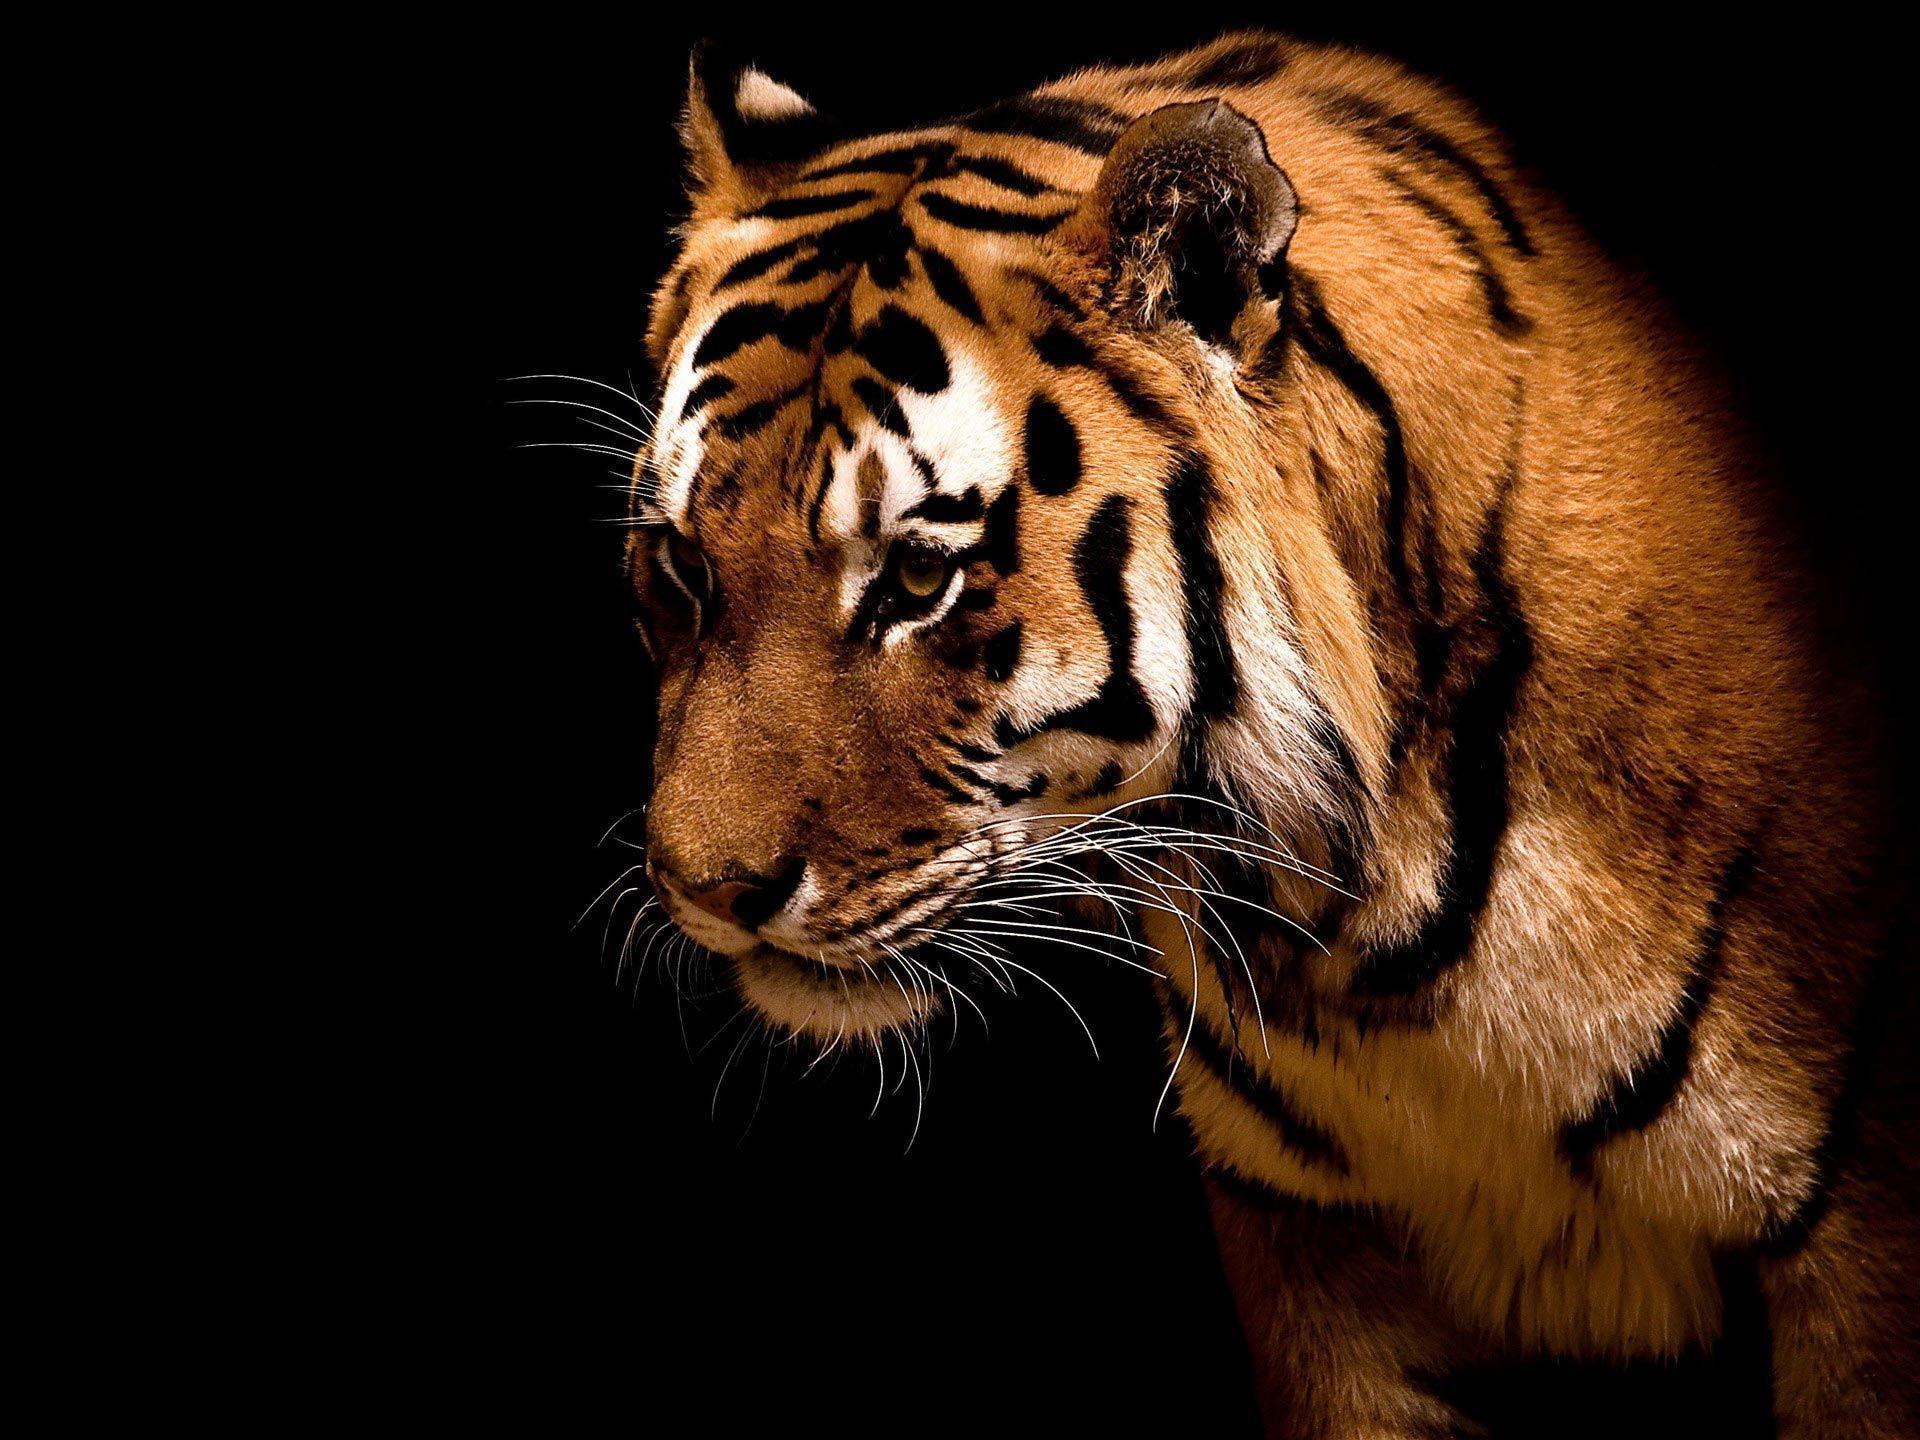 Desktop Windows 7 Tiger Big cat HD Wallpaper. High Quality